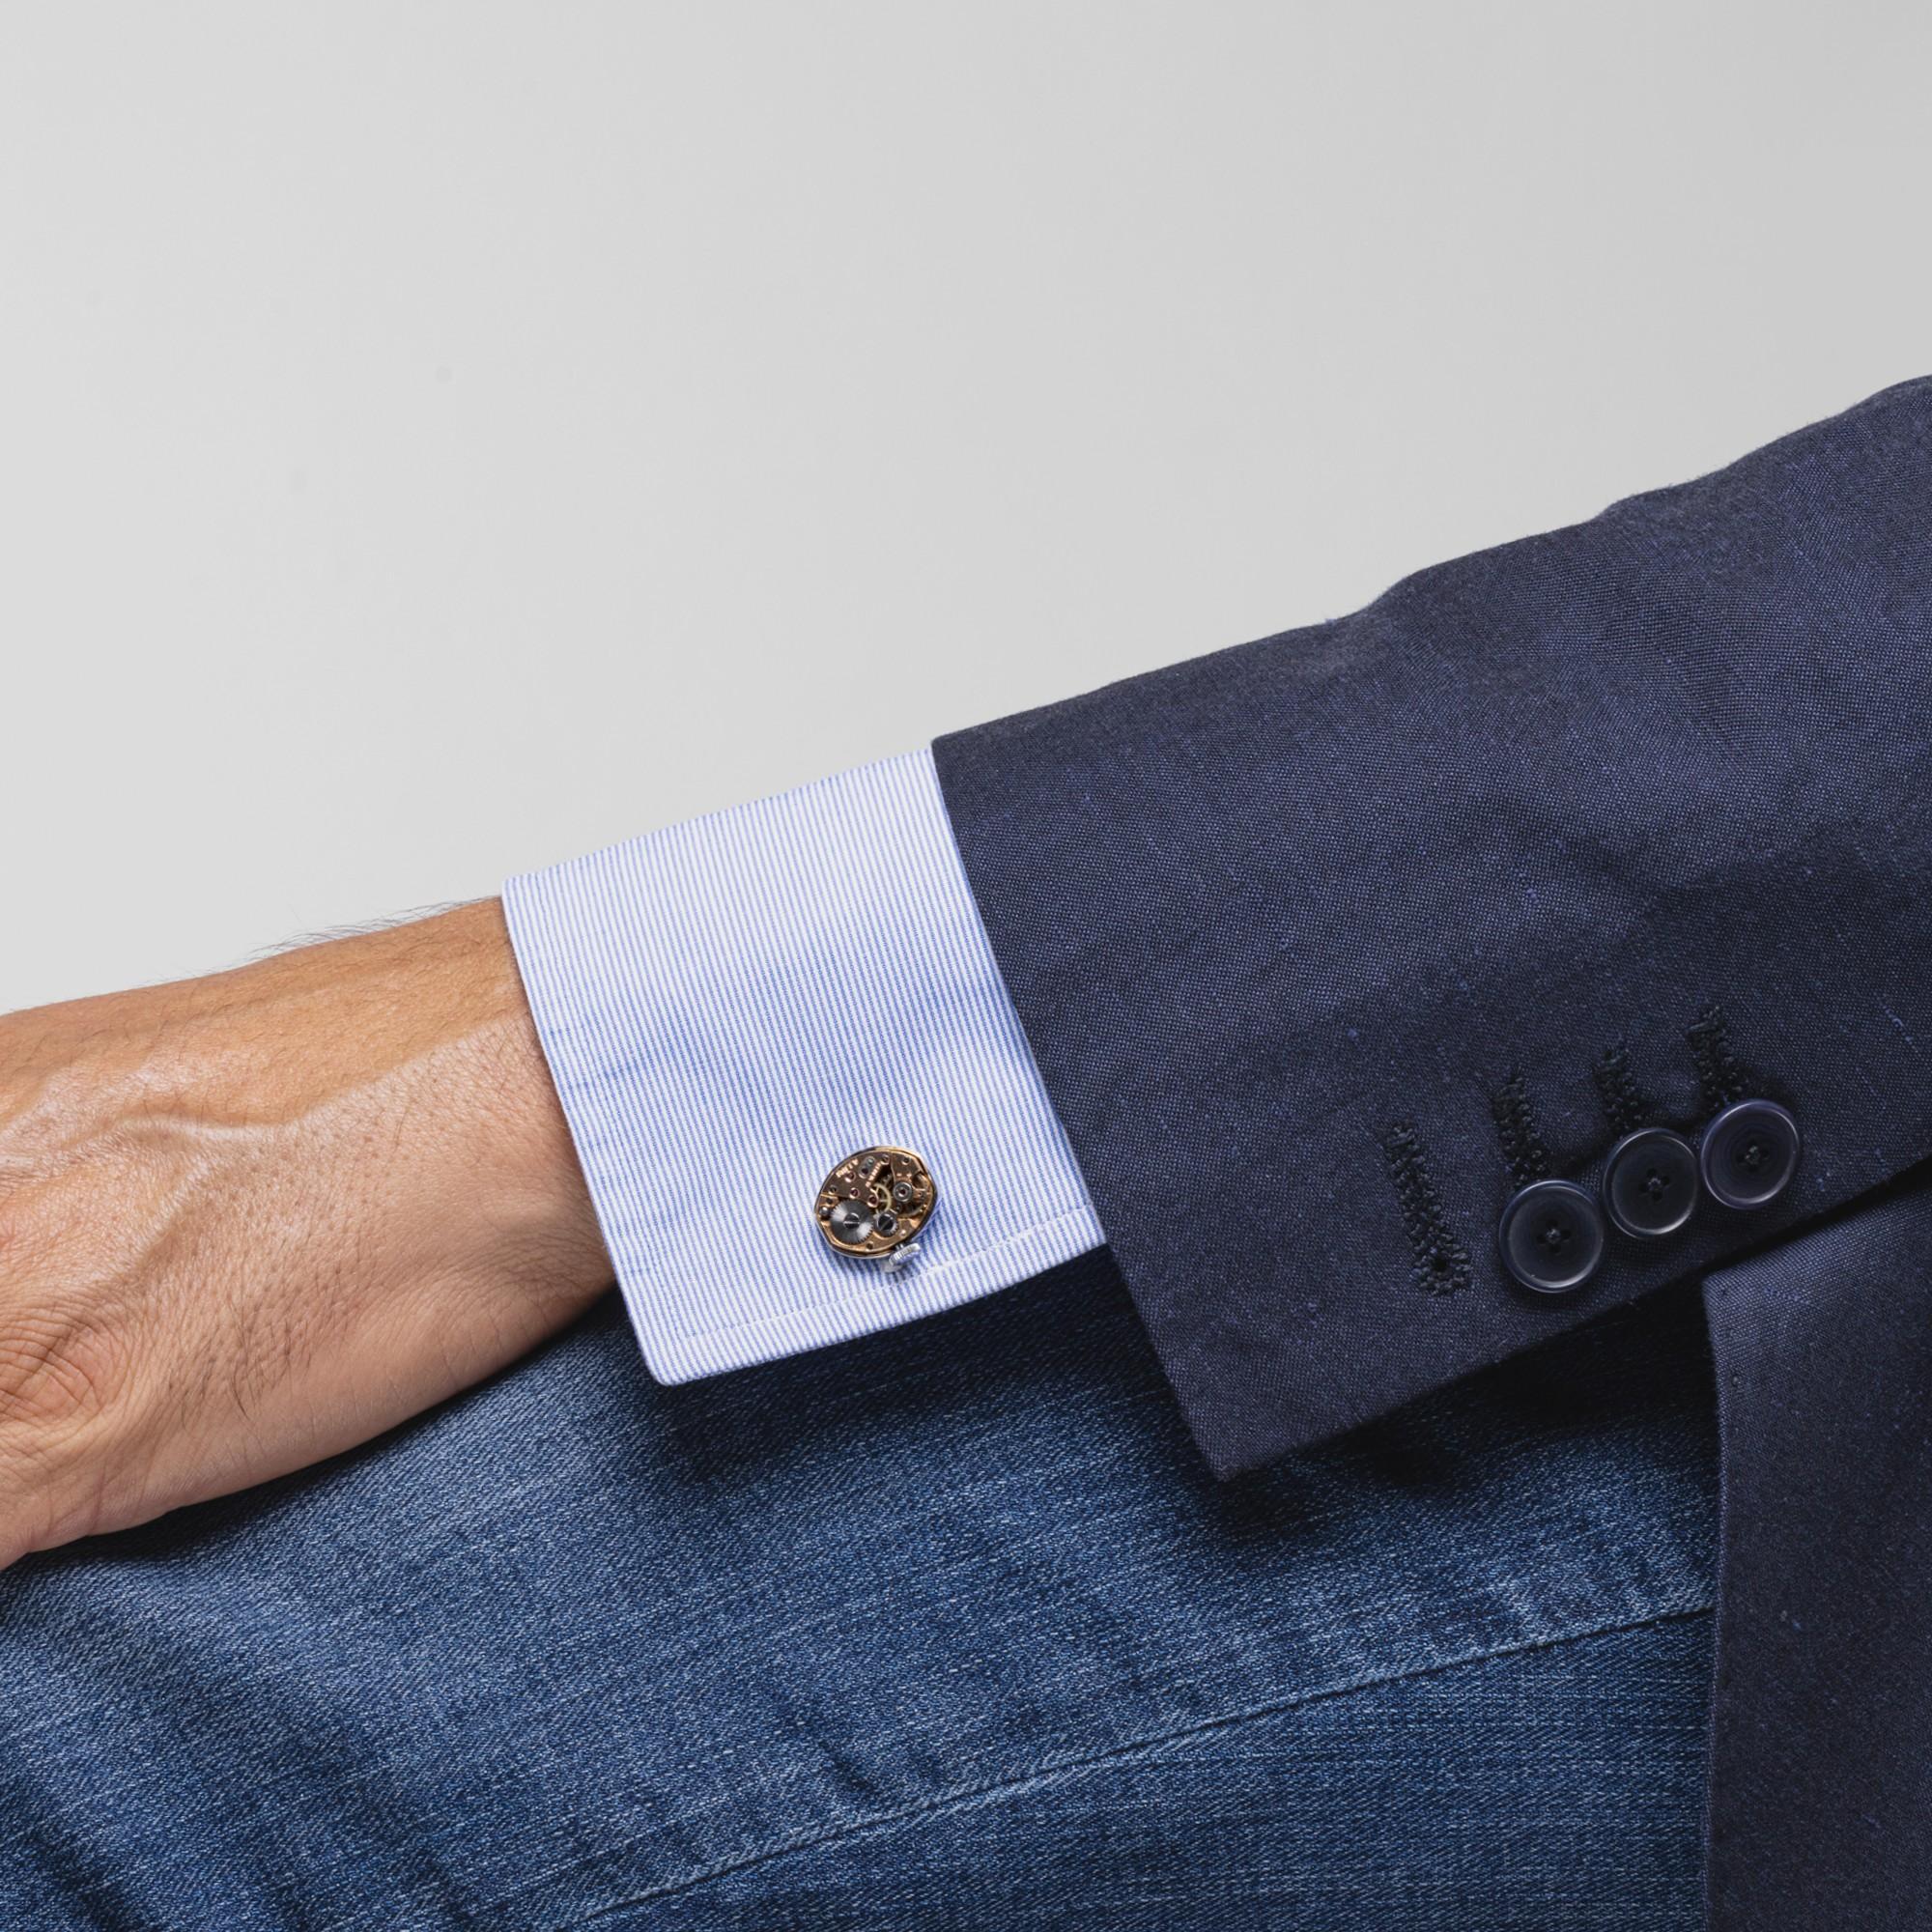 Collection design Alex Jona, fabrication artisanale en Italie, authentique mouvement de montre vintage sur une paire de boutons de manchette en argent sterling rhodié.
Les boutons de manchette Alex Jona se distinguent, non seulement par leur design